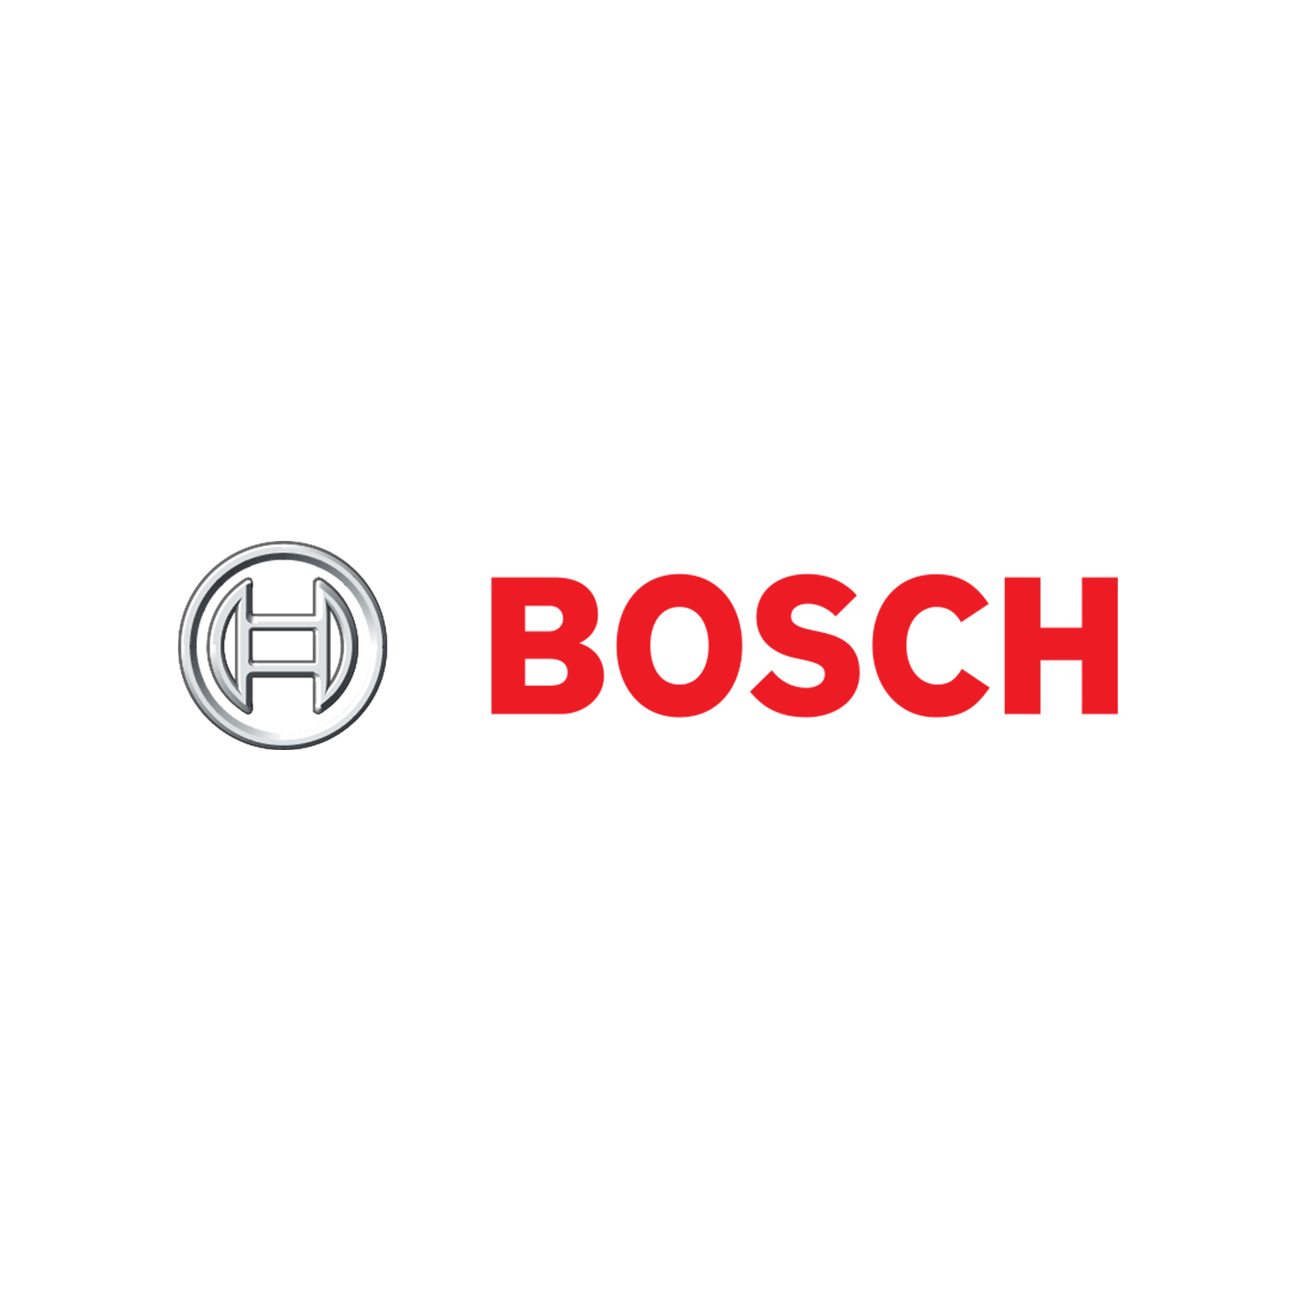 Bosch Washing Machine Parts - My Oven Spares